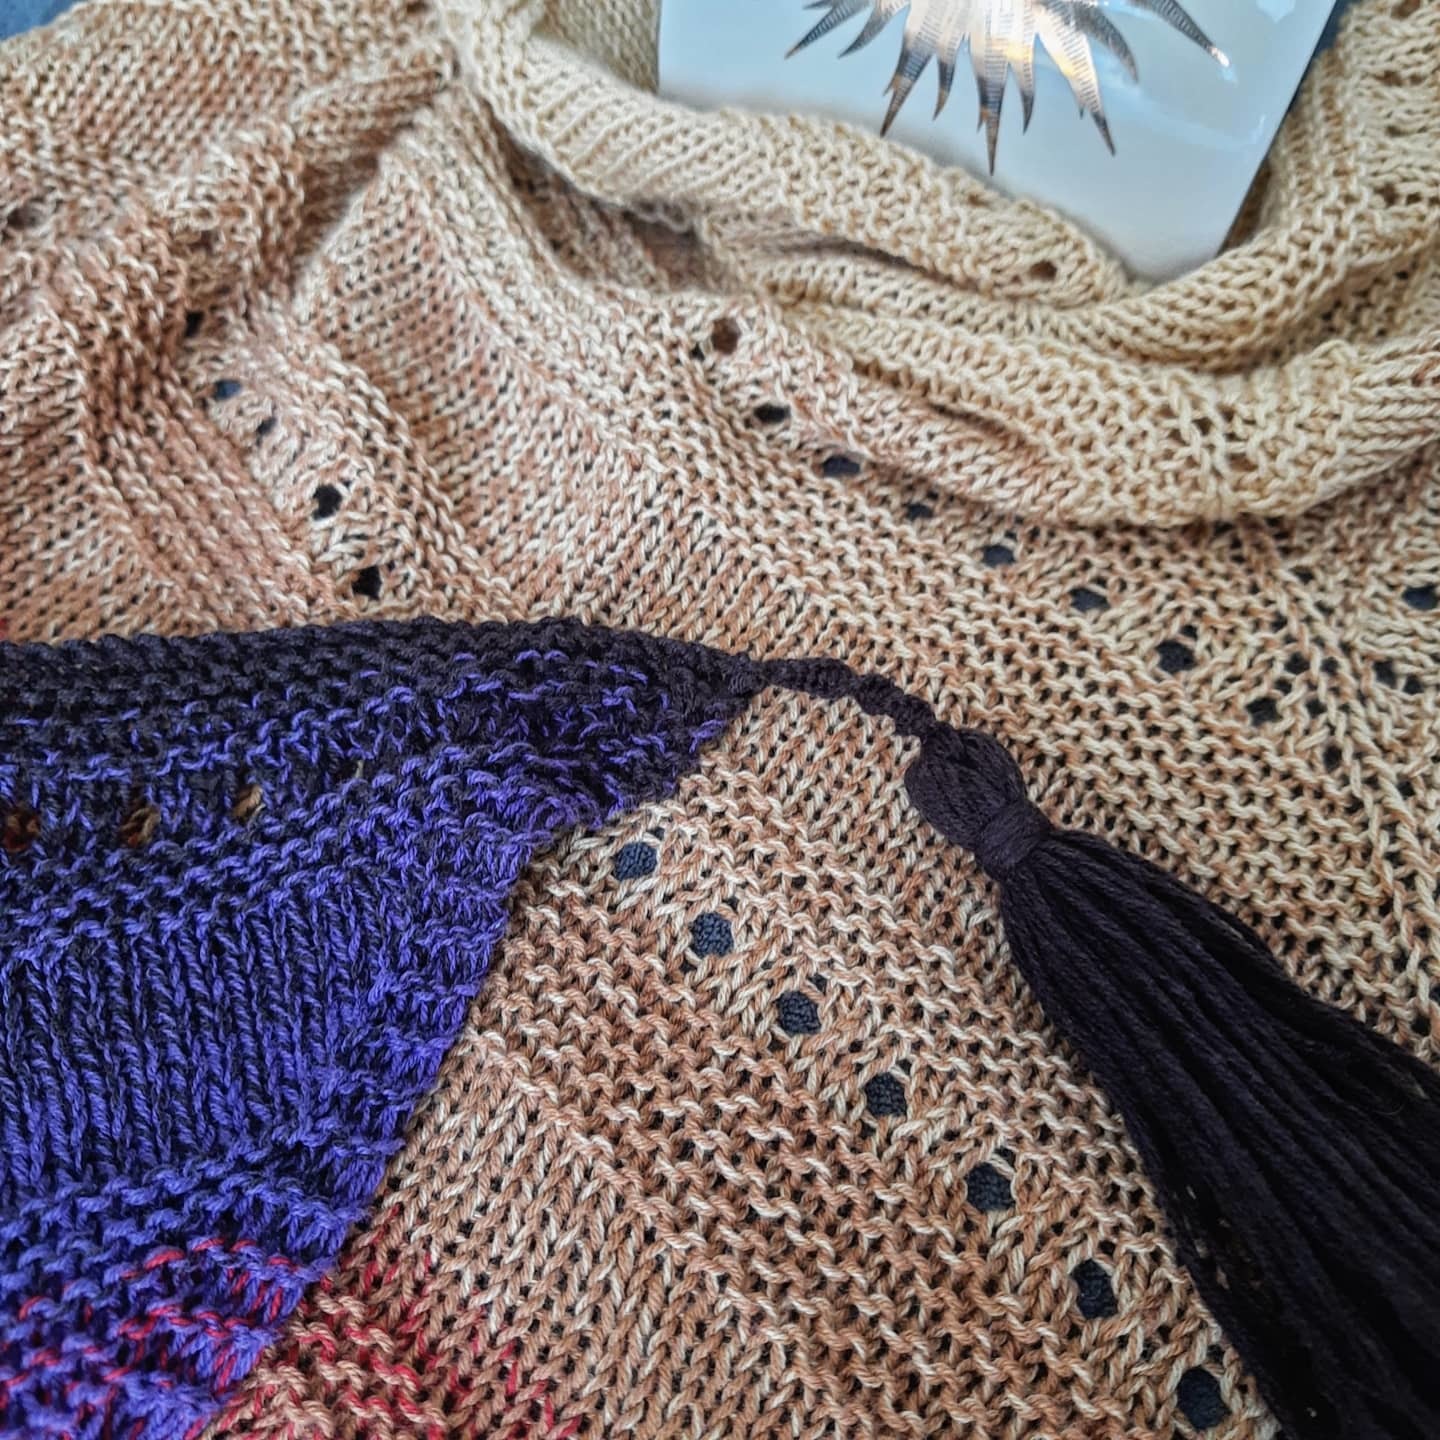 Post #8013441 - My, Knitting, Needlework, Bactus, Shawl, Knitting, Crochet, Longpost, Needlework without process